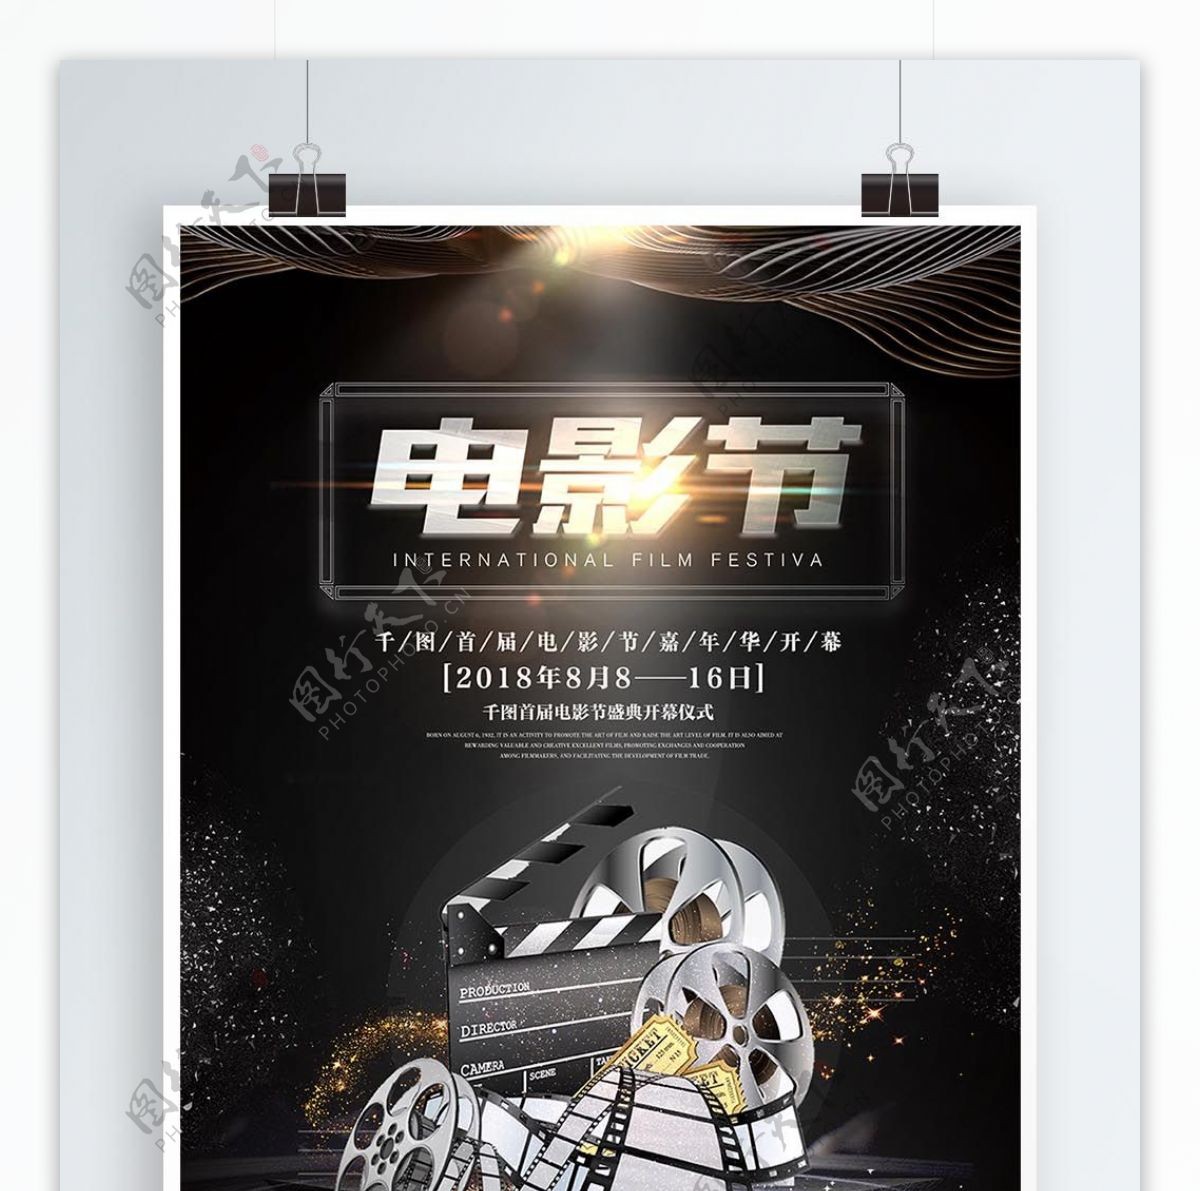 创意金属电影节嘉年华宣传海报设计